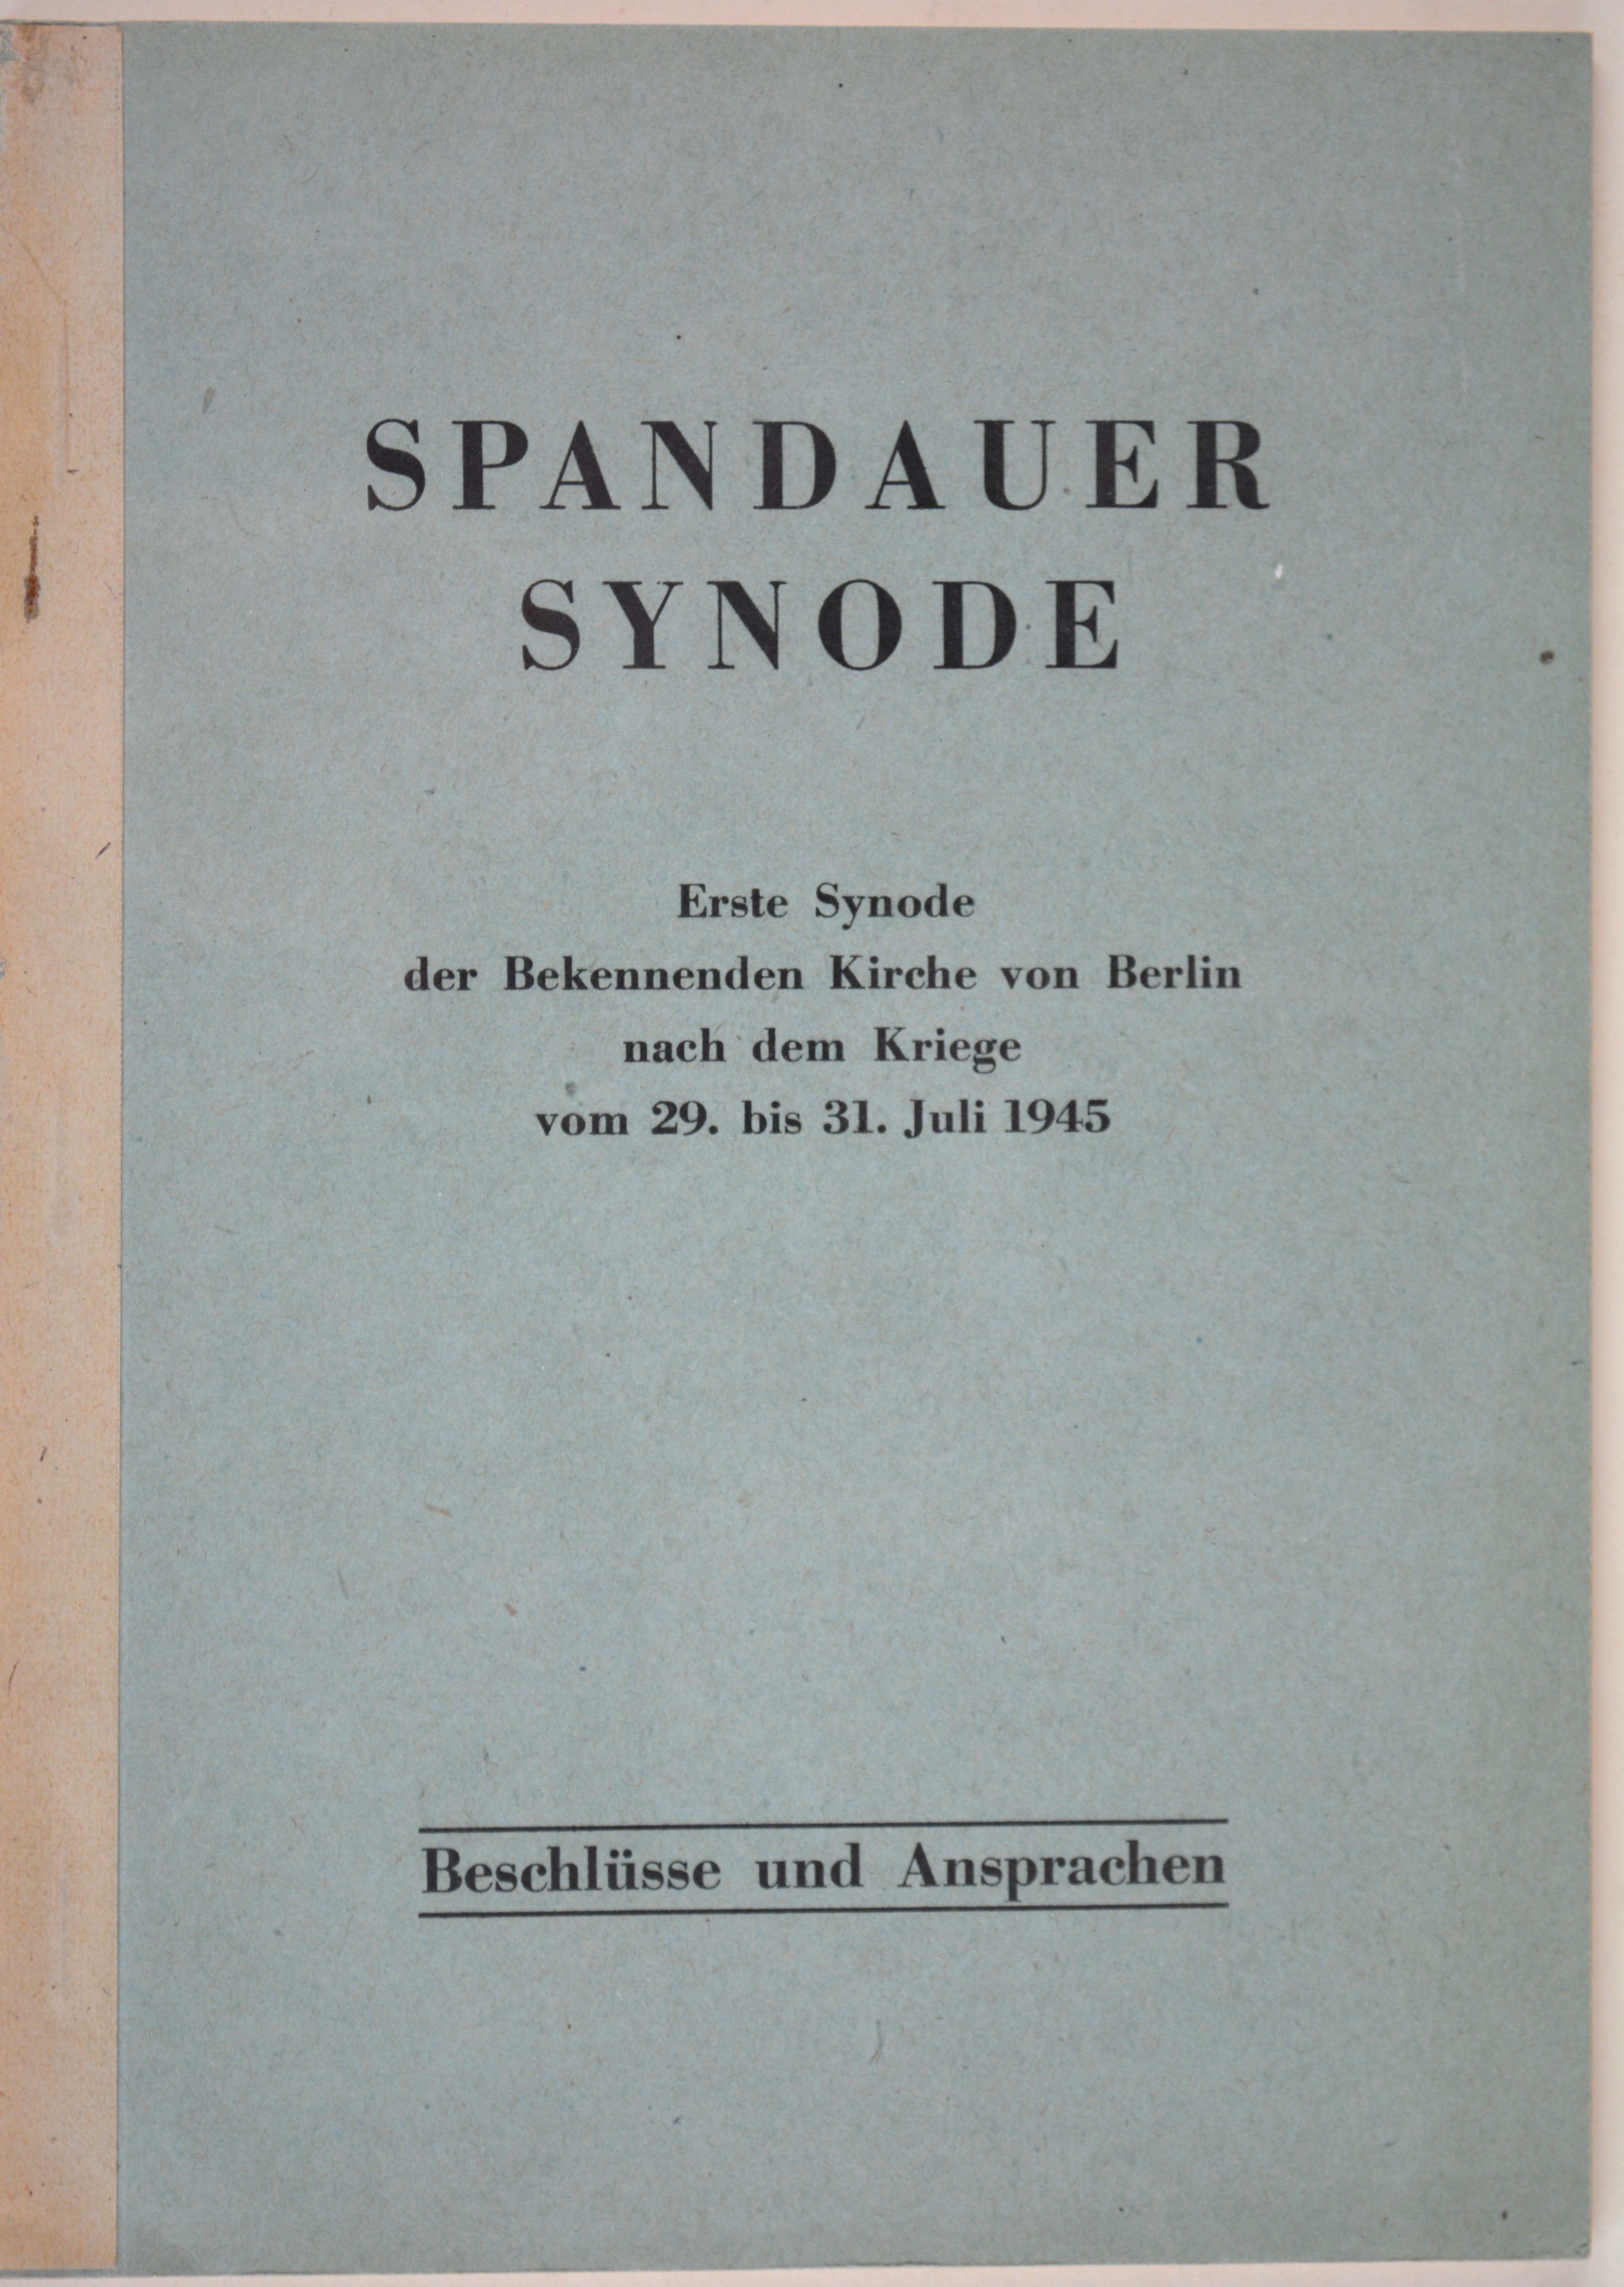 Broschüre: Spandauer Synode vom 29. bis 31. Juli 1945 in Berlin (DDR Geschichtsmuseum im Dokumentationszentrum Perleberg CC BY-SA)